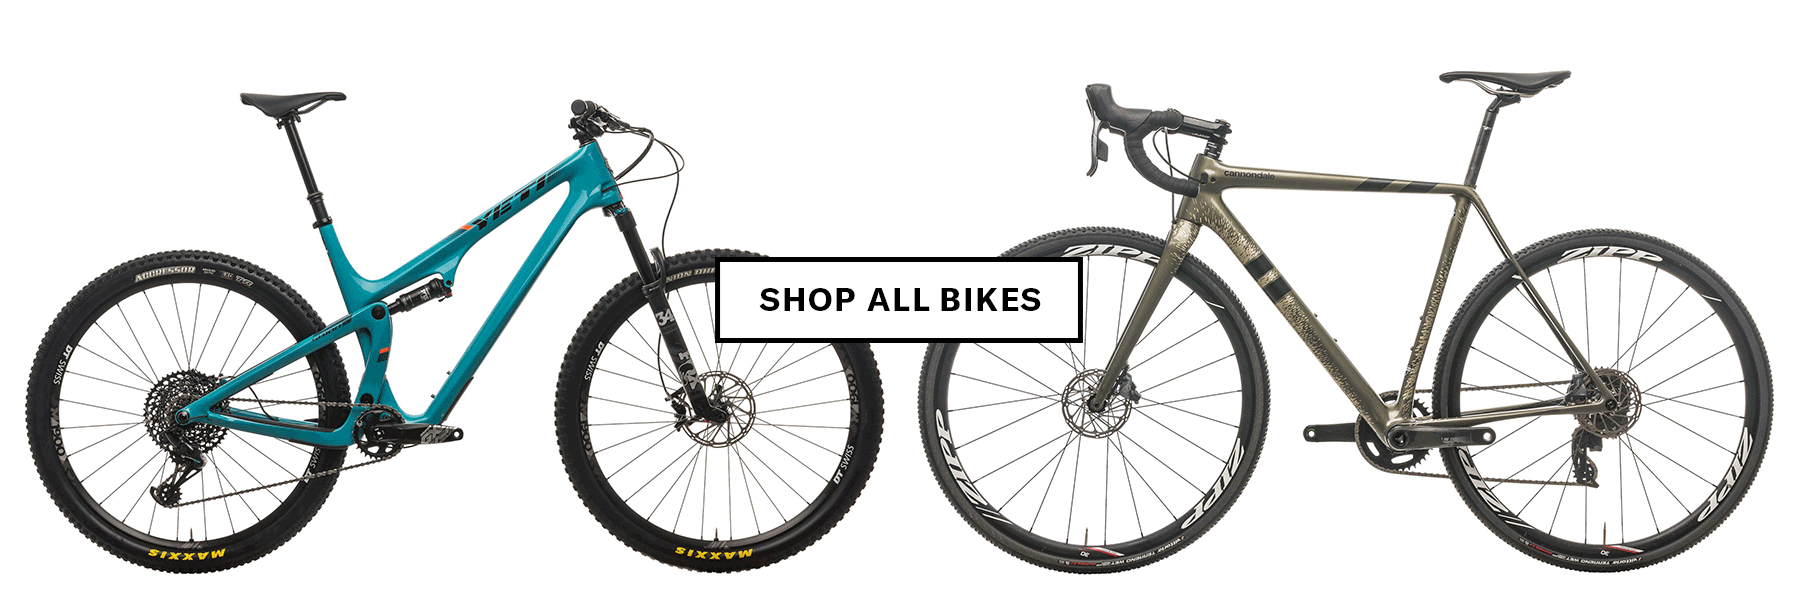 Shop all bikes